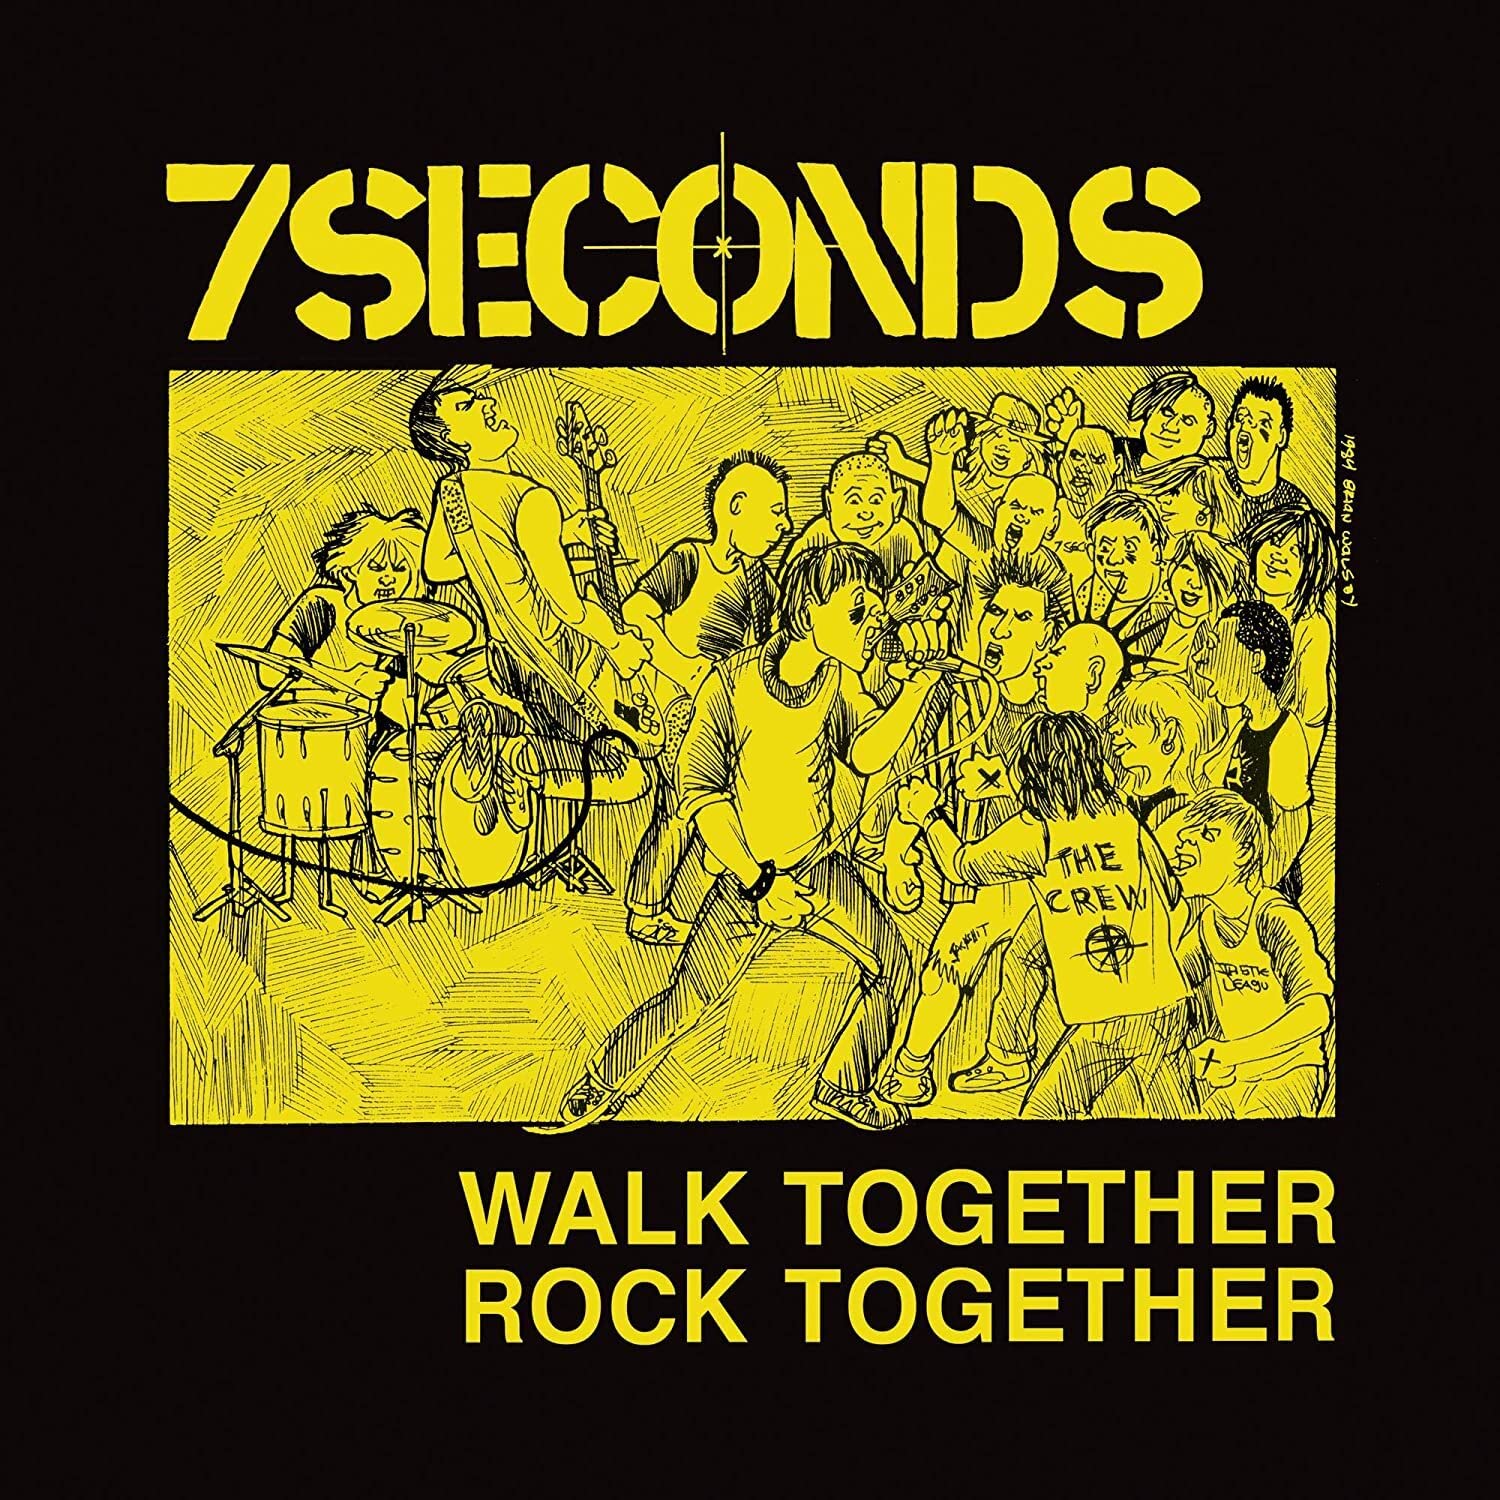 Vinile 7Seconds - Walk Together Rock Together (Trust Edition) NUOVO SIGILLATO, EDIZIONE DEL 03/02/2023 SUBITO DISPONIBILE